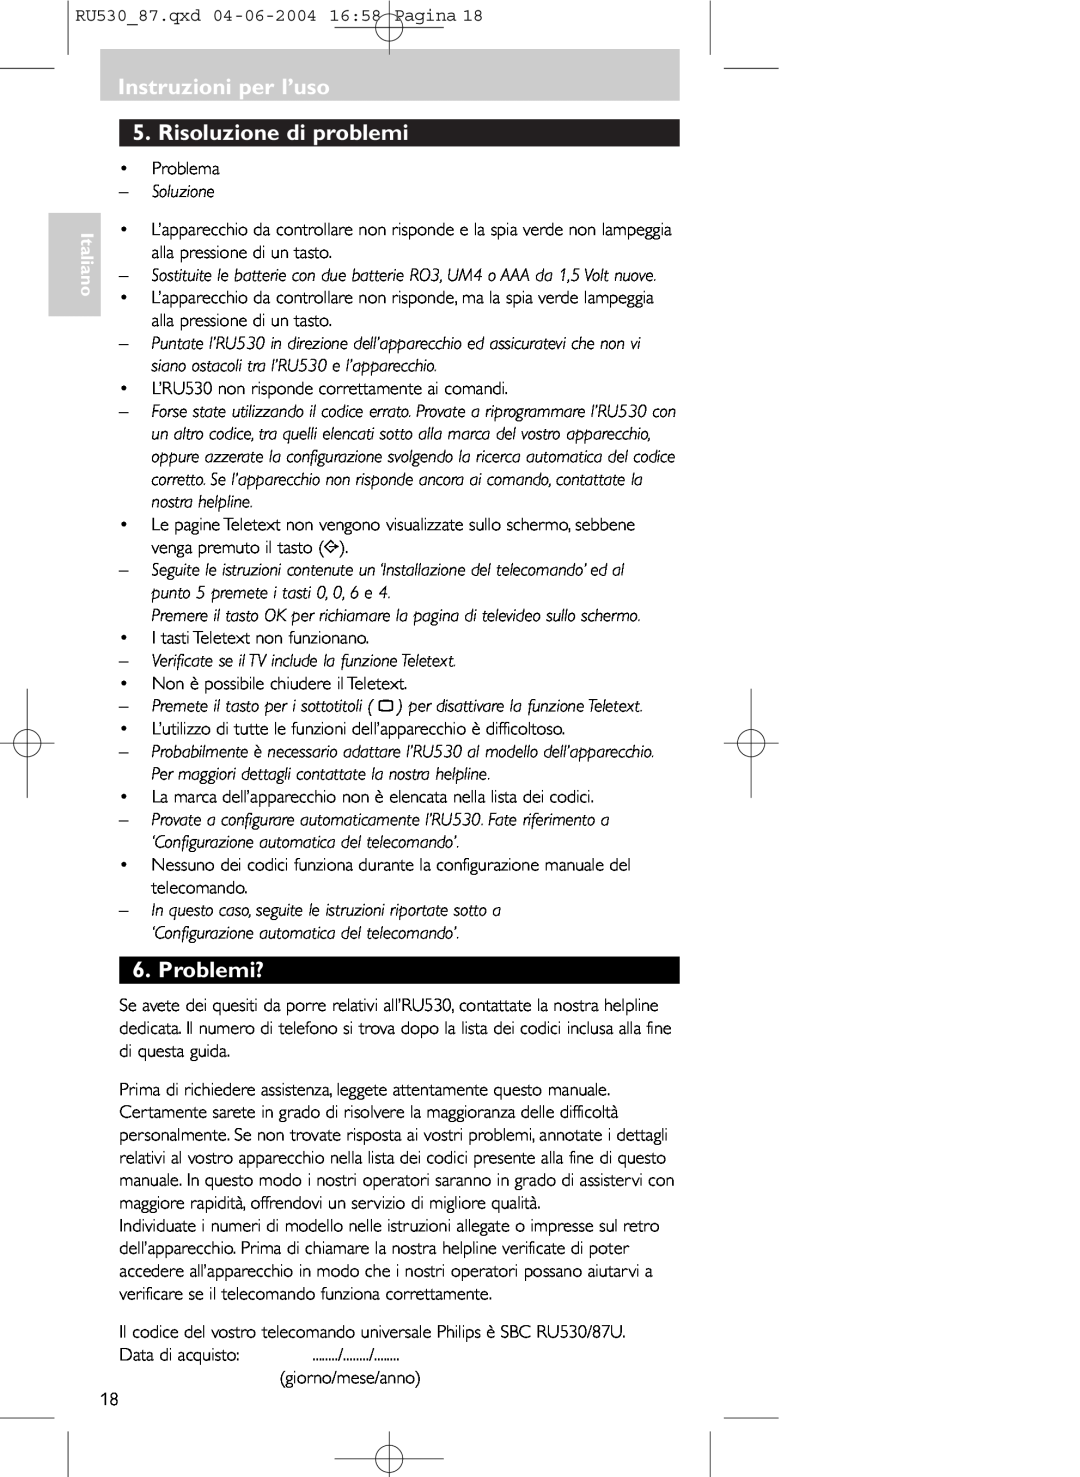 Philips SBC RU 530/87U manual Instruzioni per l’uso 5.Risoluzione di problemi, Problemi?, Italiano 